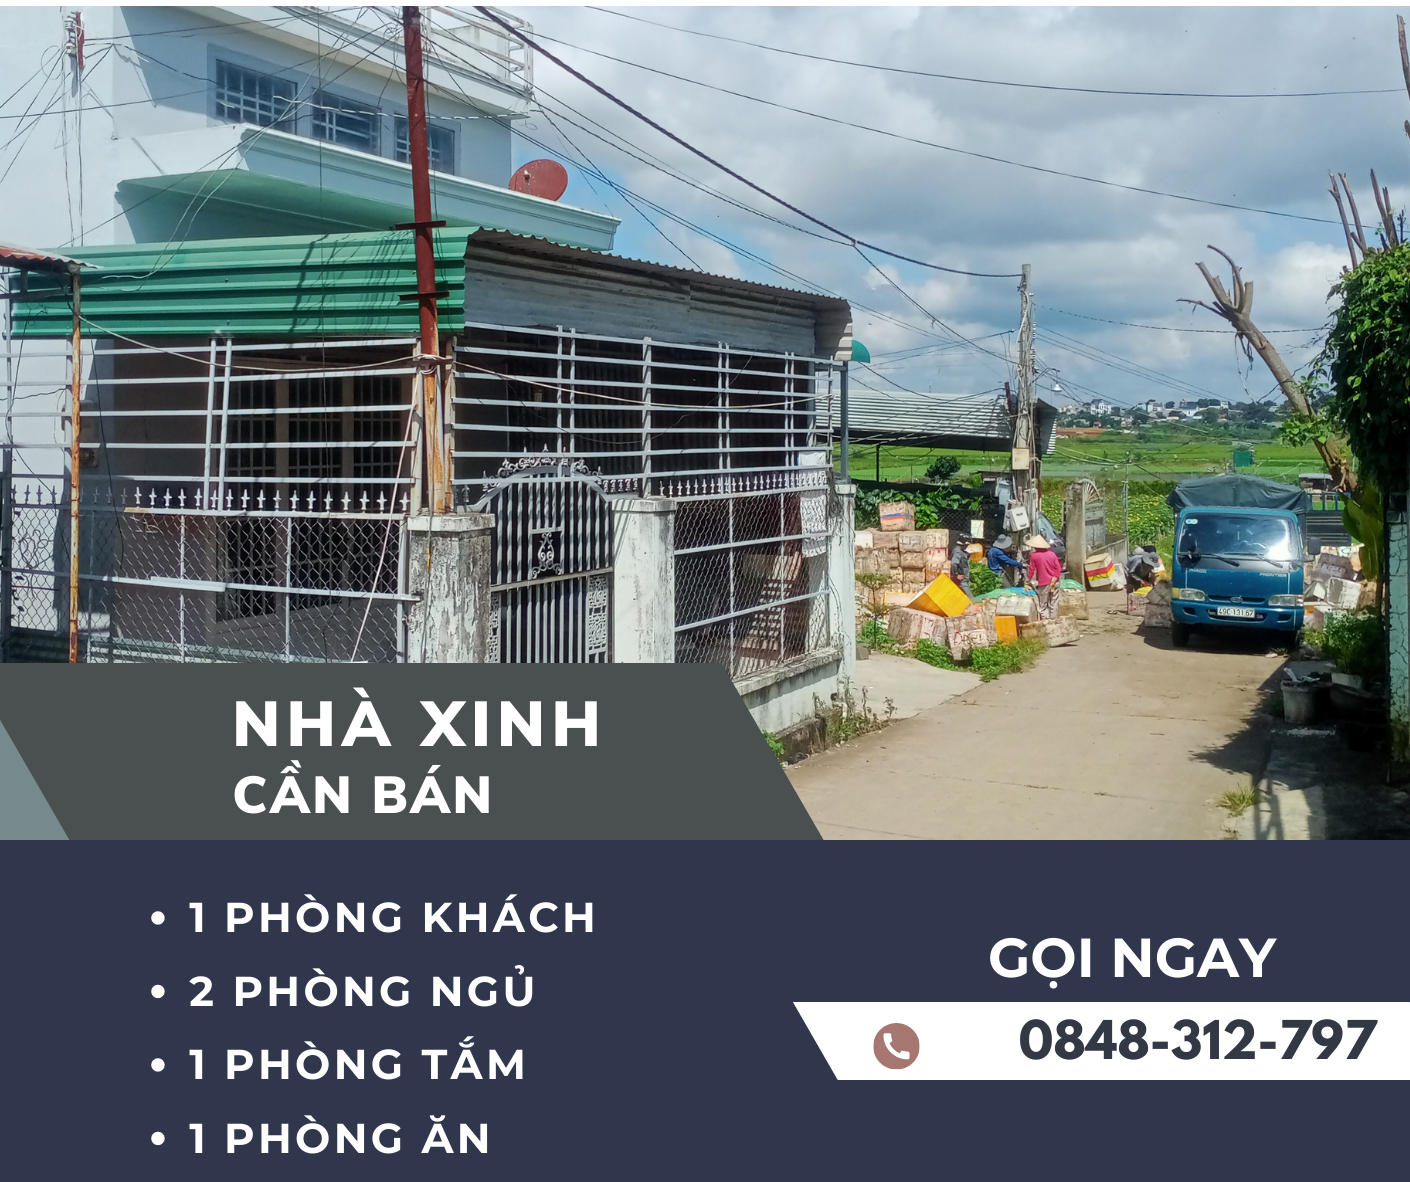 Cần bán Nhà ở, nhà cấp 4, nhà hẻm đường Nguyễn Bá Ngọc, Xã Phú Hội, Diện tích 144m², Giá 1.8 Tỷ